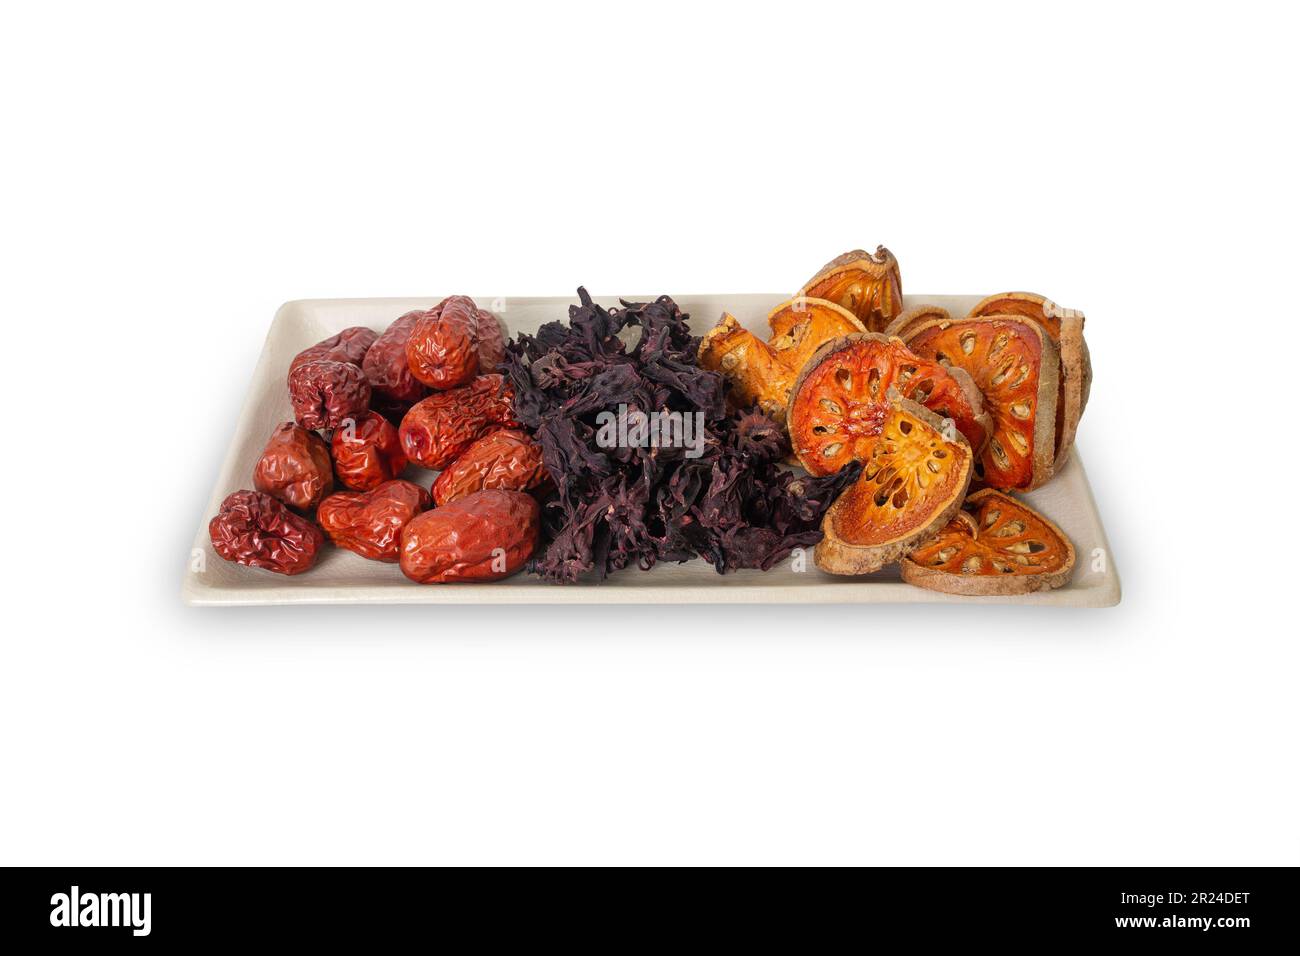 Drei Arten von asiatischen getrockneten Früchten, Bael, Okra und Jujube sind Zutaten für gesunden Kräutertee auf demselben Teller auf weißem Hintergrund. Stockfoto